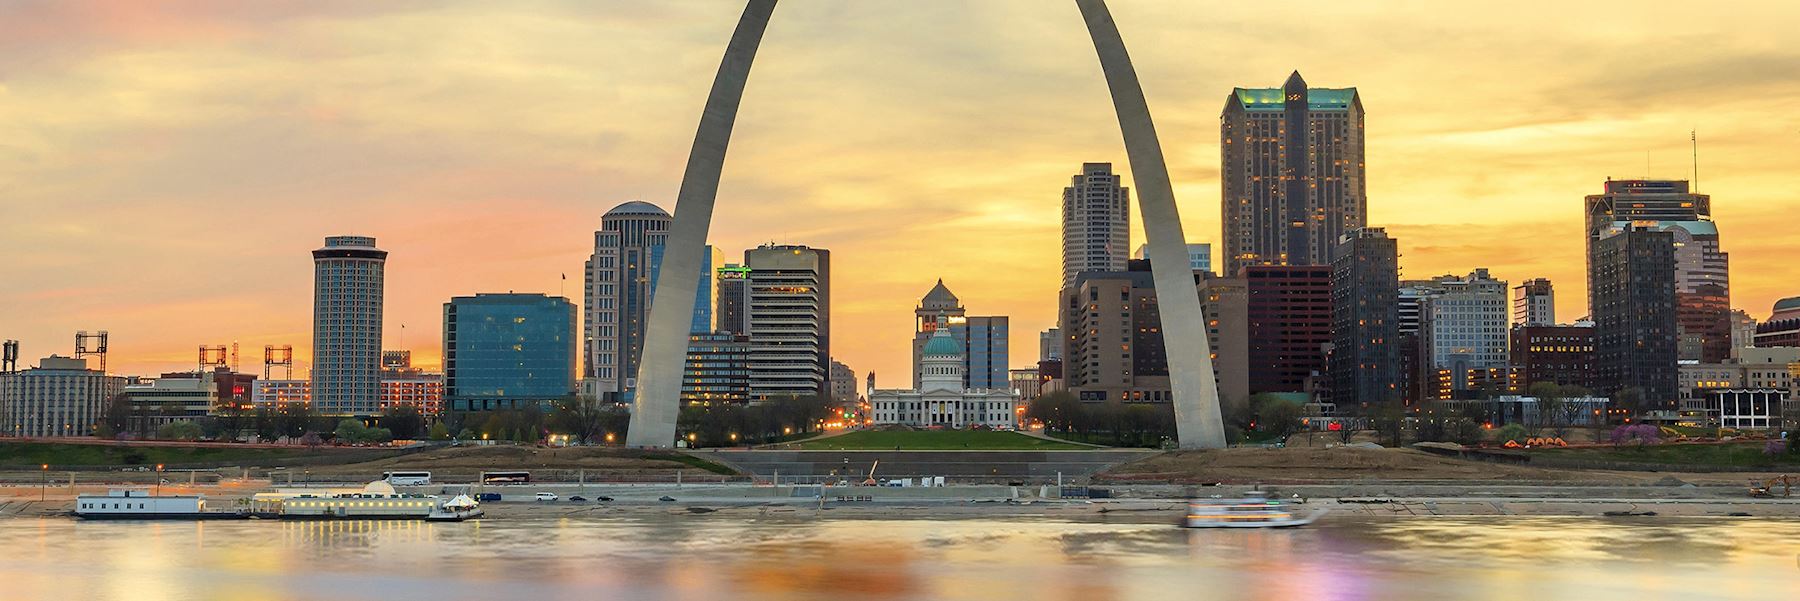 St Louis, Missouri | Audley Travel